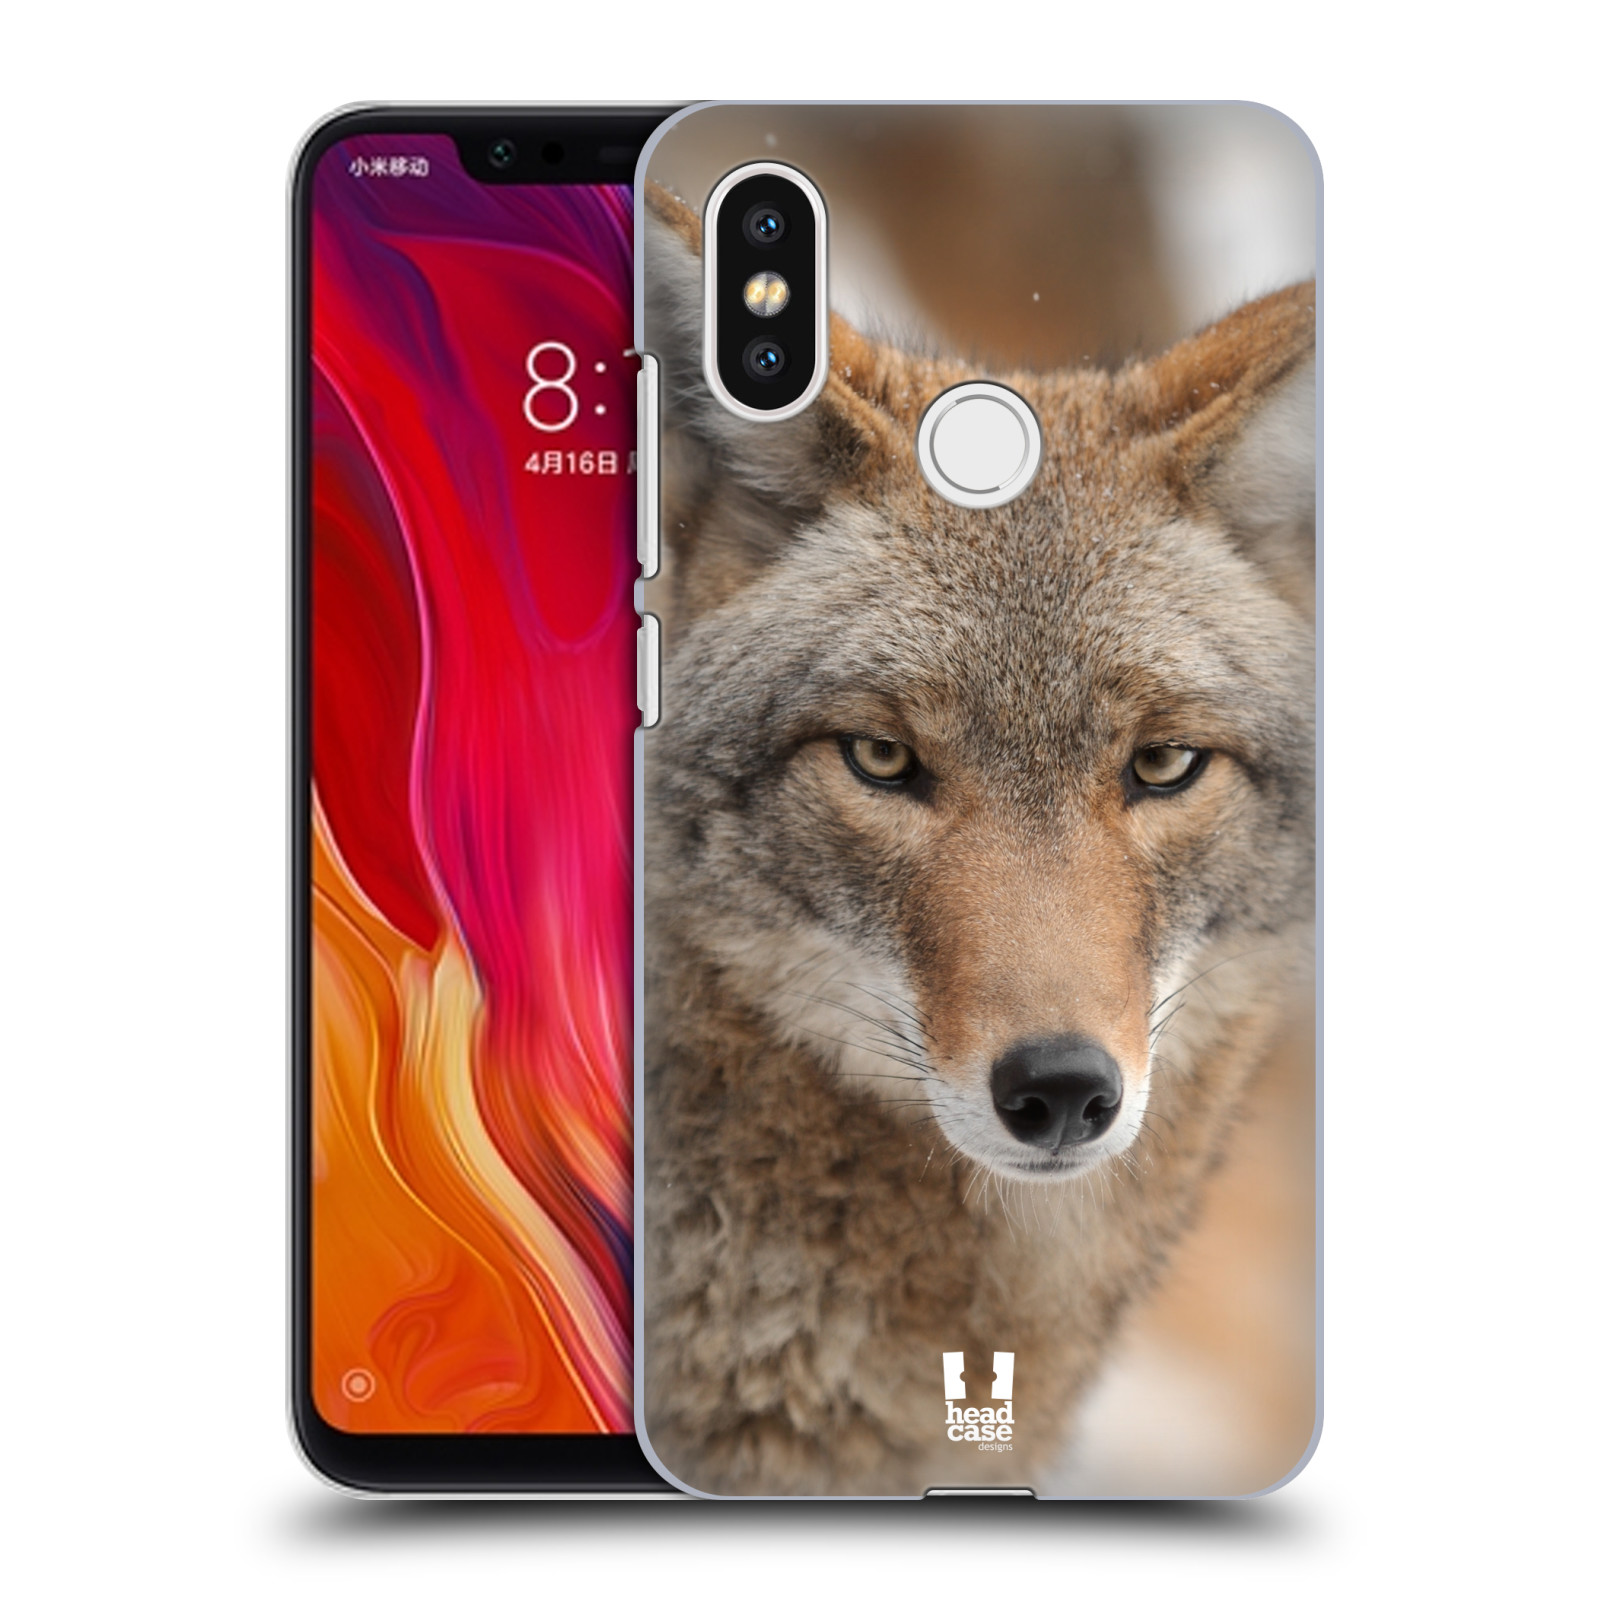 HEAD CASE plastový obal na mobil Xiaomi Mi 8 vzor slavná zvířata foto kojot